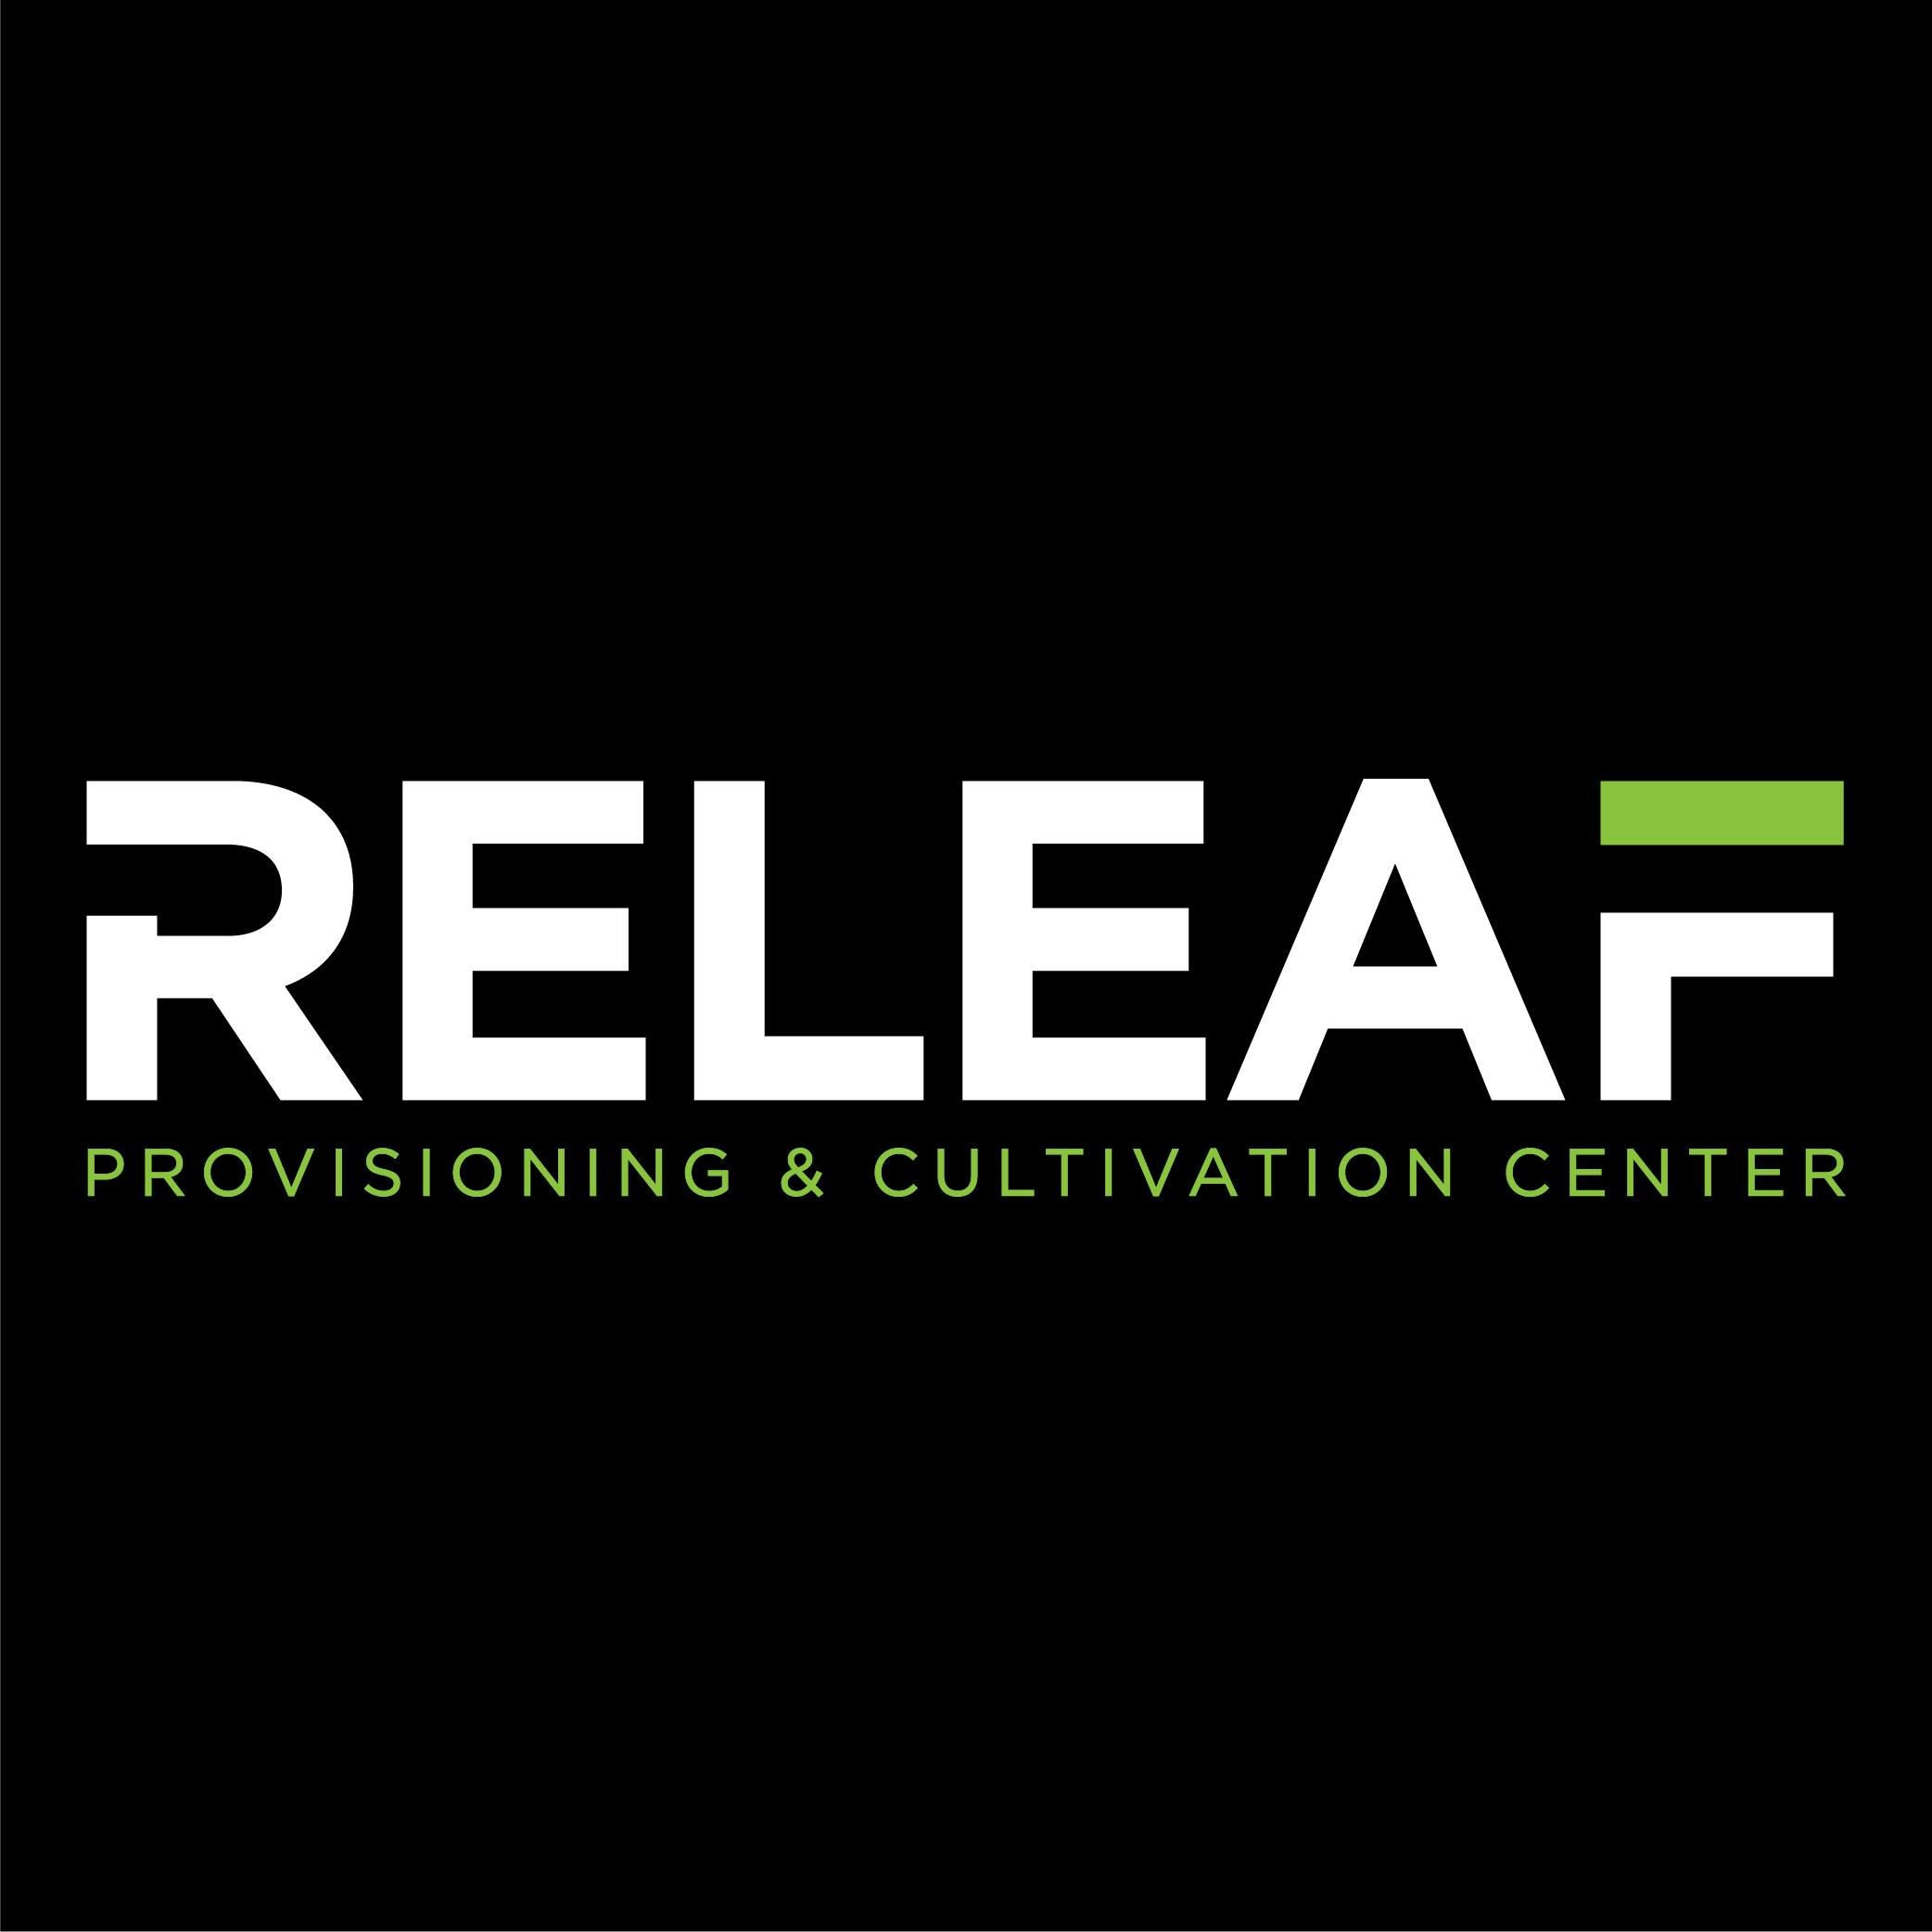 Wayne Releaf Provisioning & Cultivation Center logo